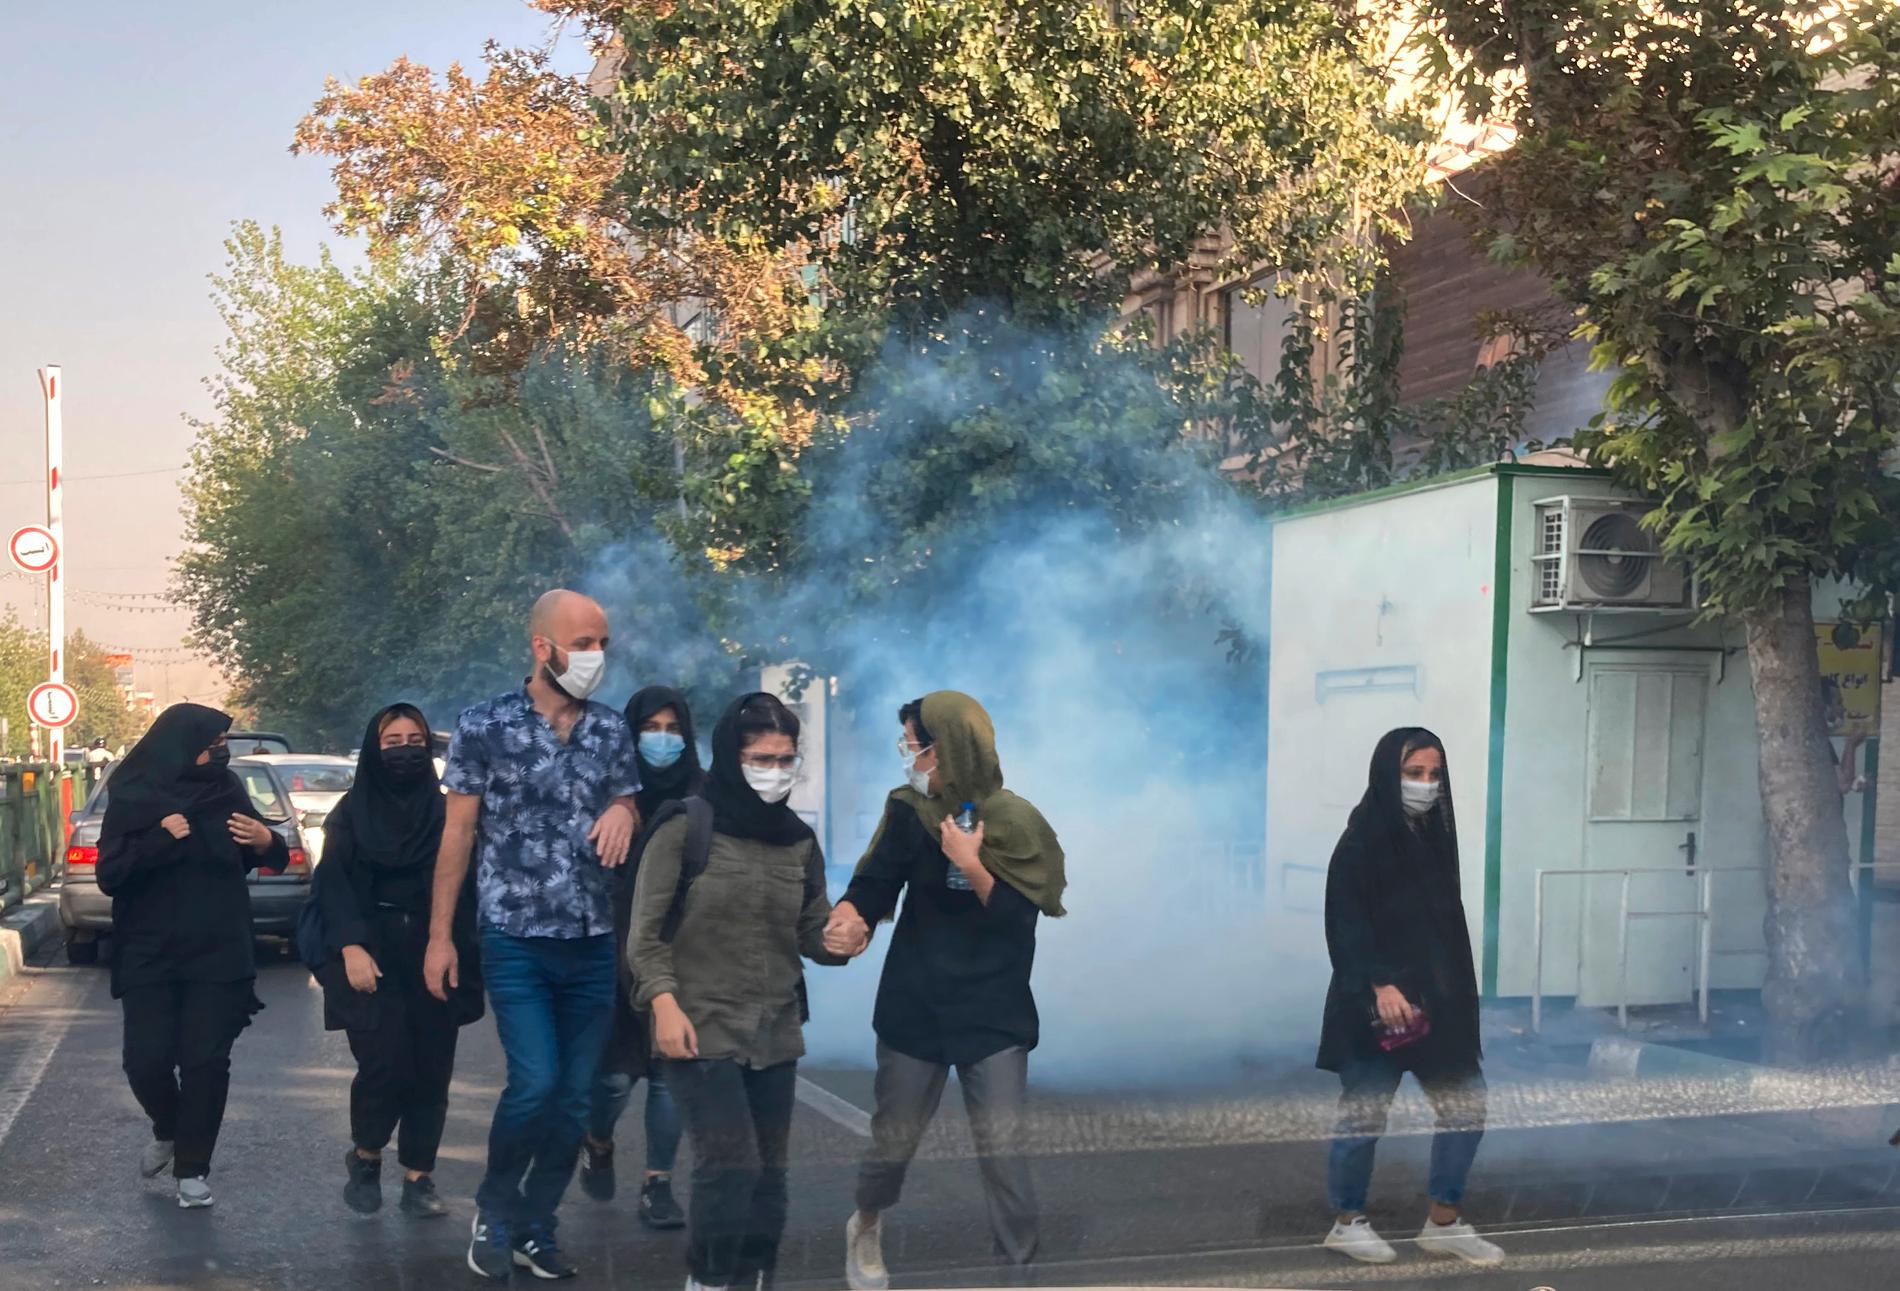 Regimens säkerhetsstyrkor använder tårgas mot demonstranter vid universitetet i Teheran. De ska även utöva 